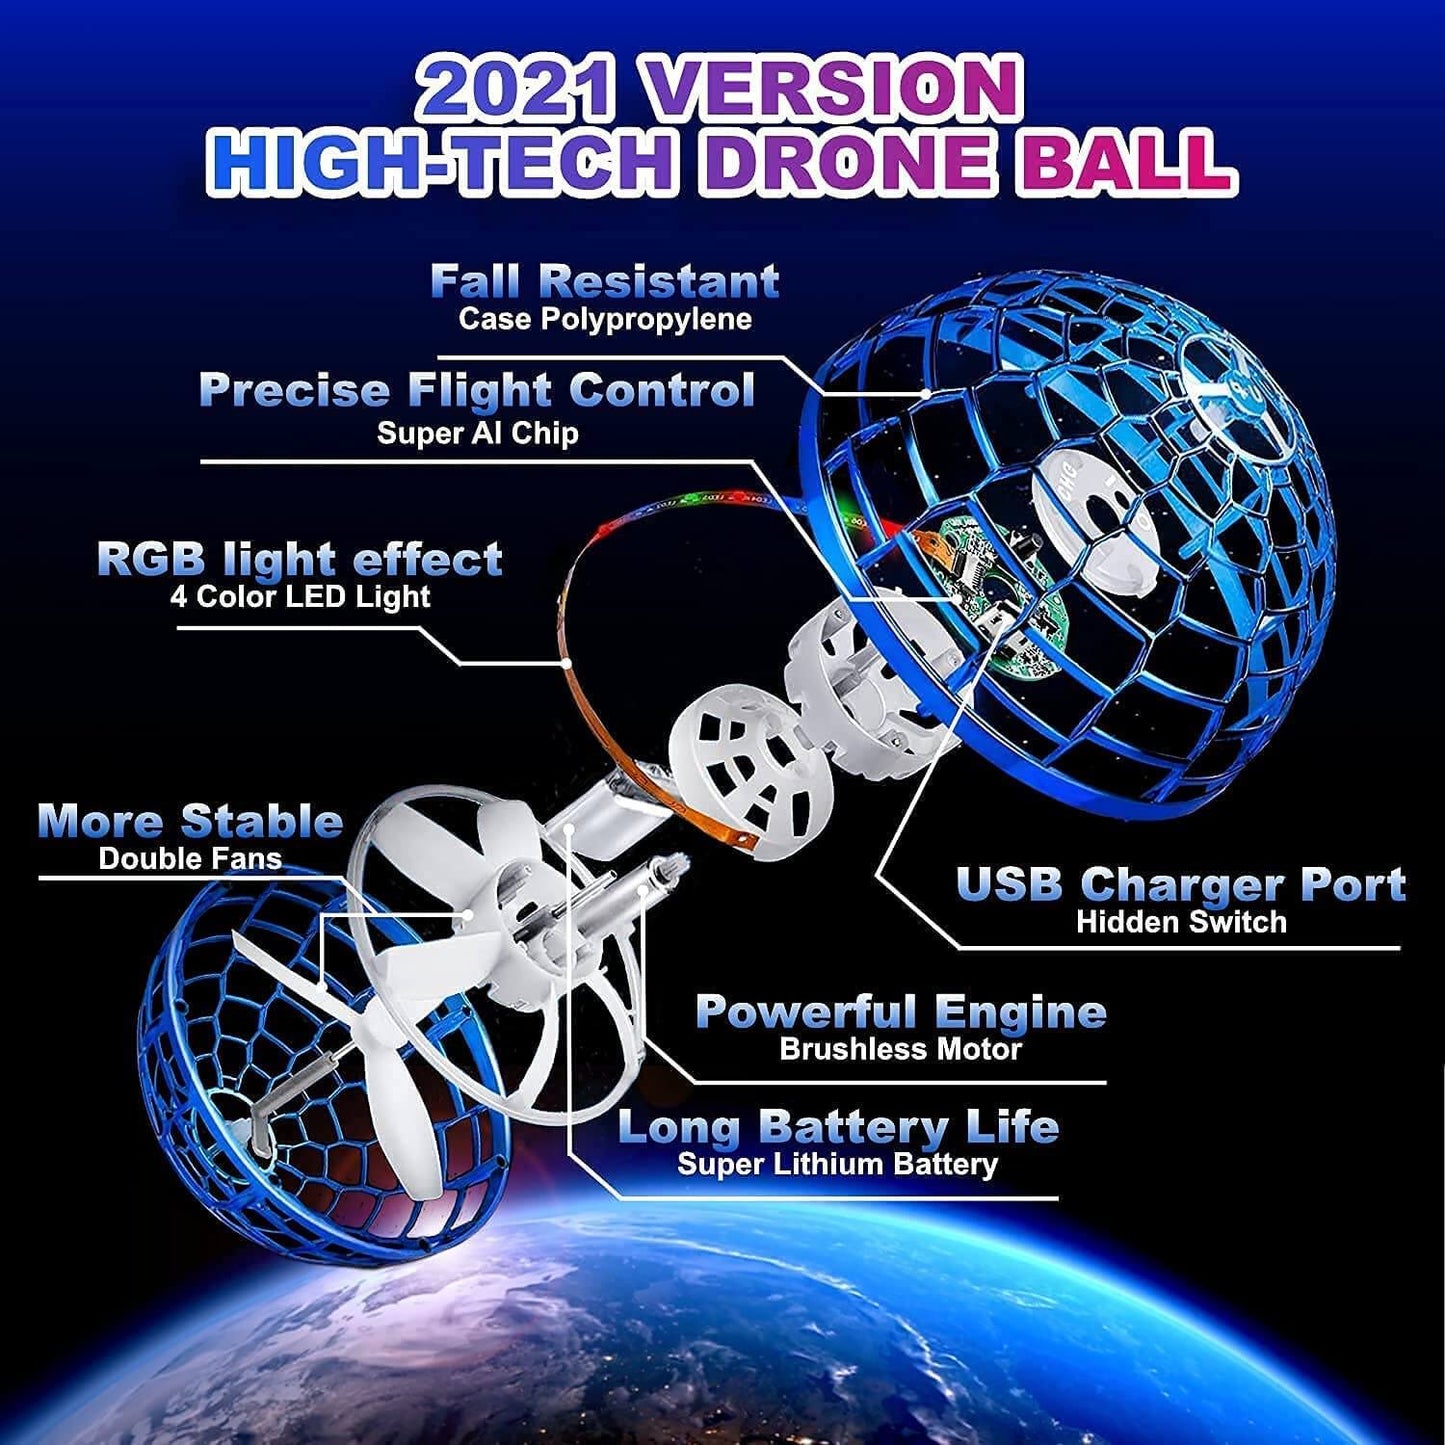 फ्लाइंग स्पिनर बॉल, बच्चों के लिए फ्लाइंग बॉल फिजेट खिलौने, यूएसबी रिचार्जेबल बिल्ट-इन आरजीबी लाइट्स 360° मैजिक कंट्रोलर के साथ घूमने वाली